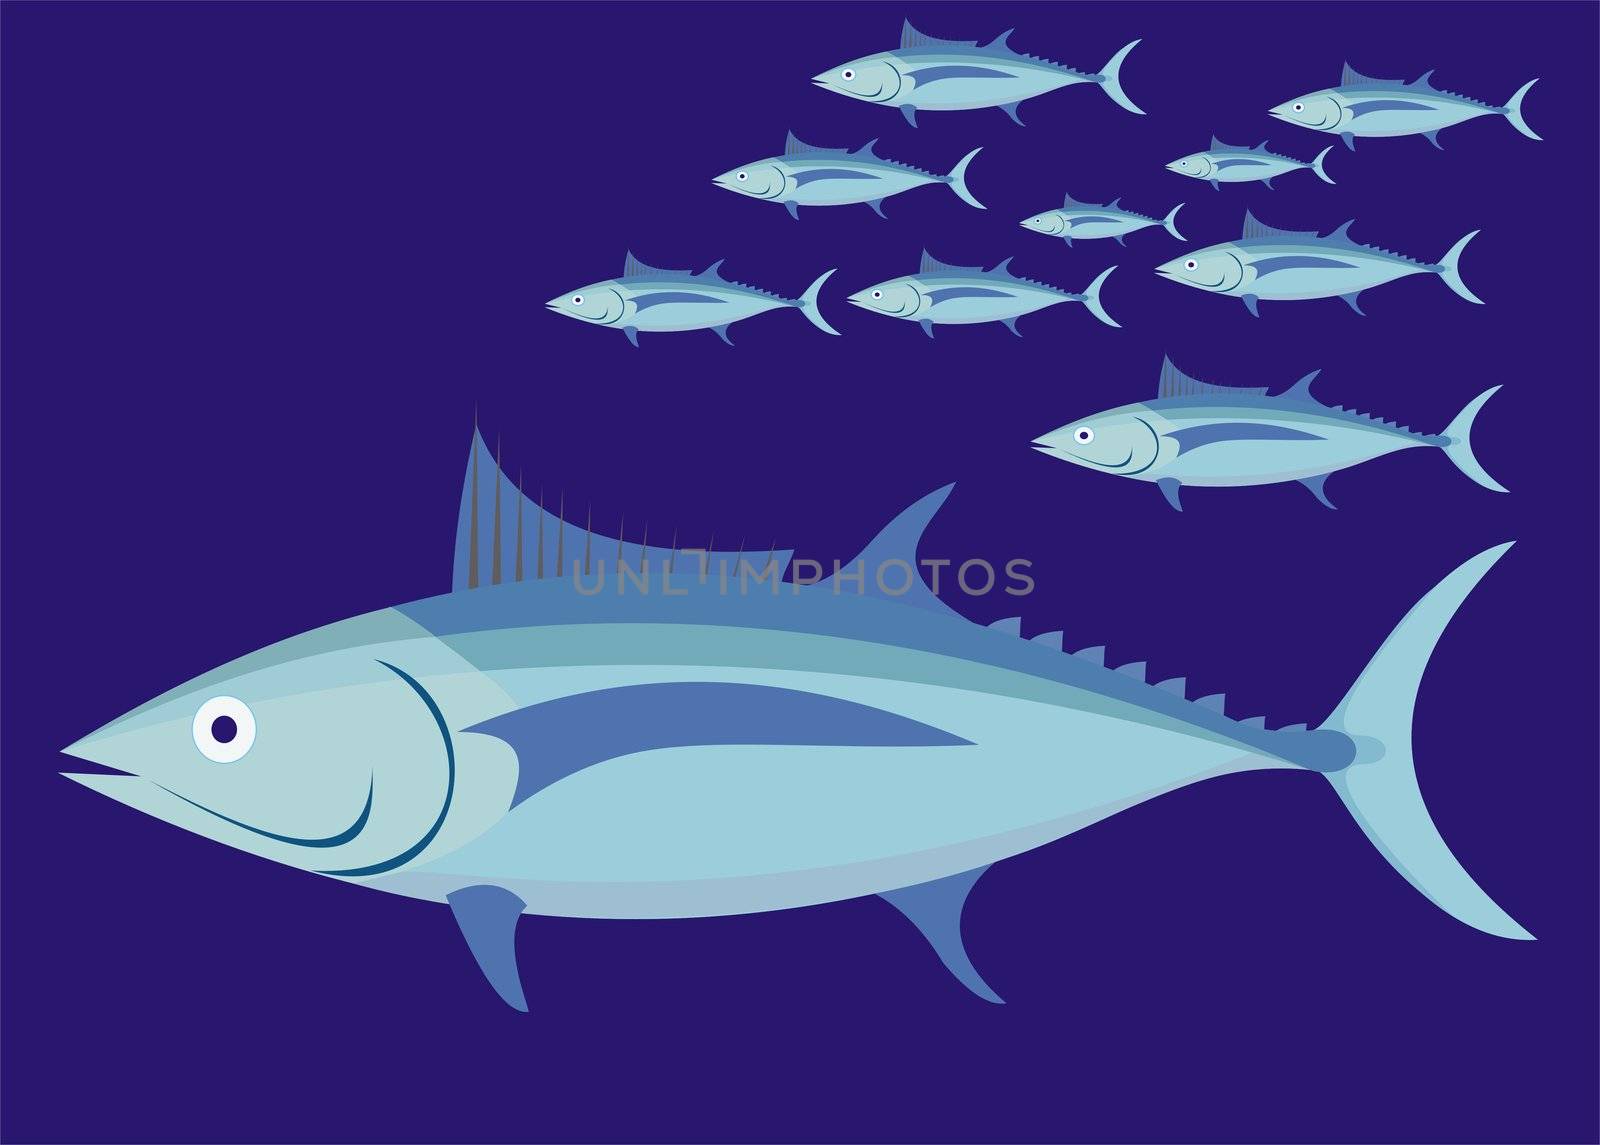 Tuna Fish by brigg